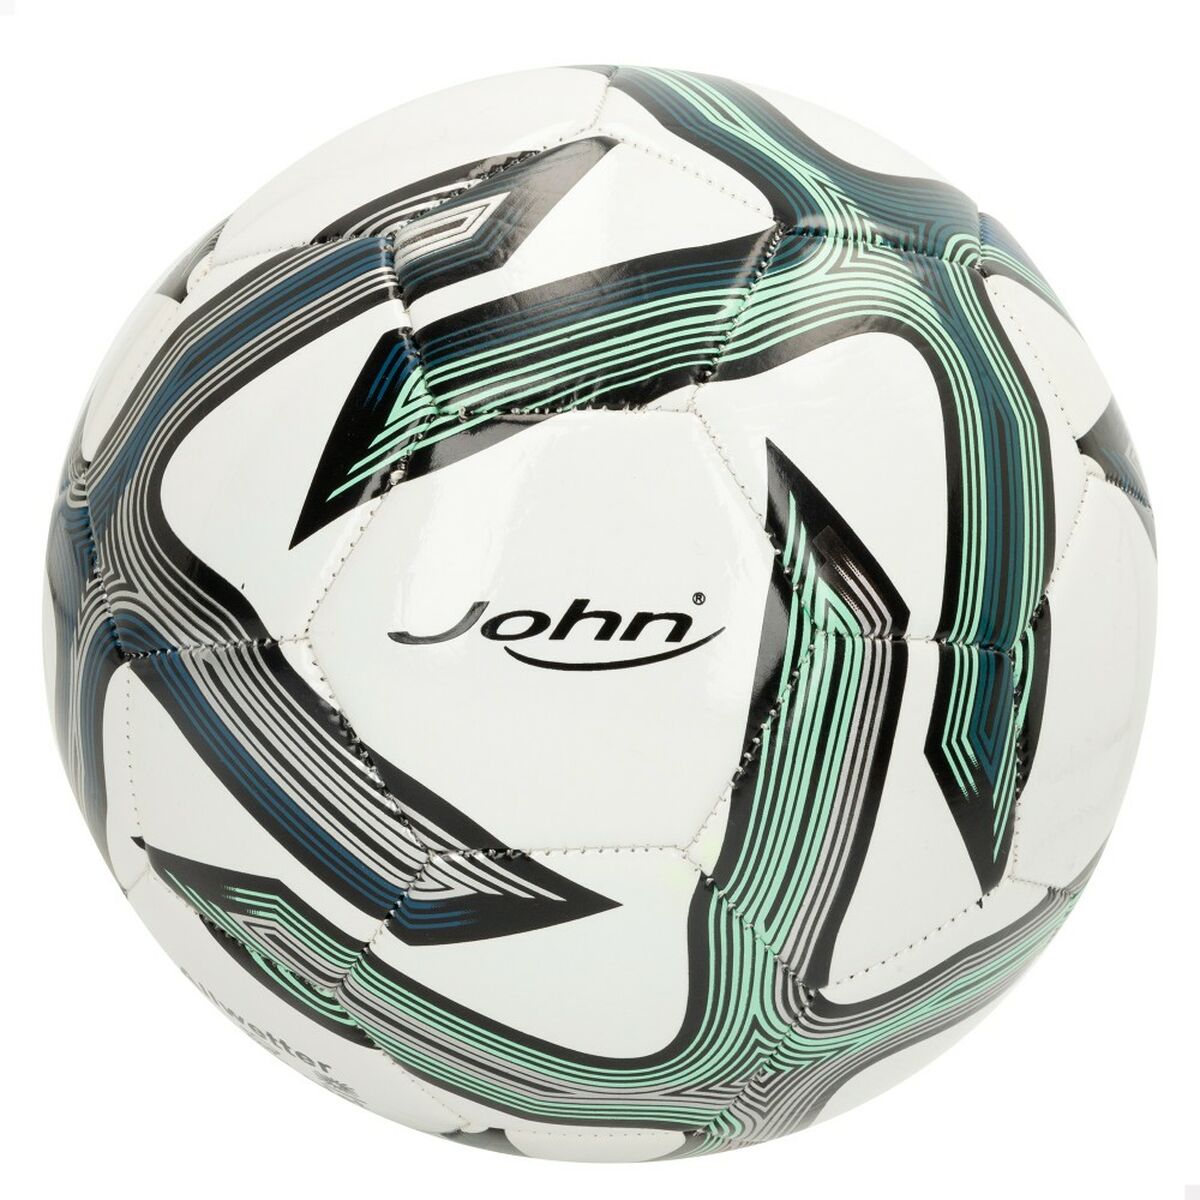 Μπάλα Ποδοσφαίρου John Sports Classic 5 Ø 22 cm Συνθετικό Δέρμα (12 Μονάδες)